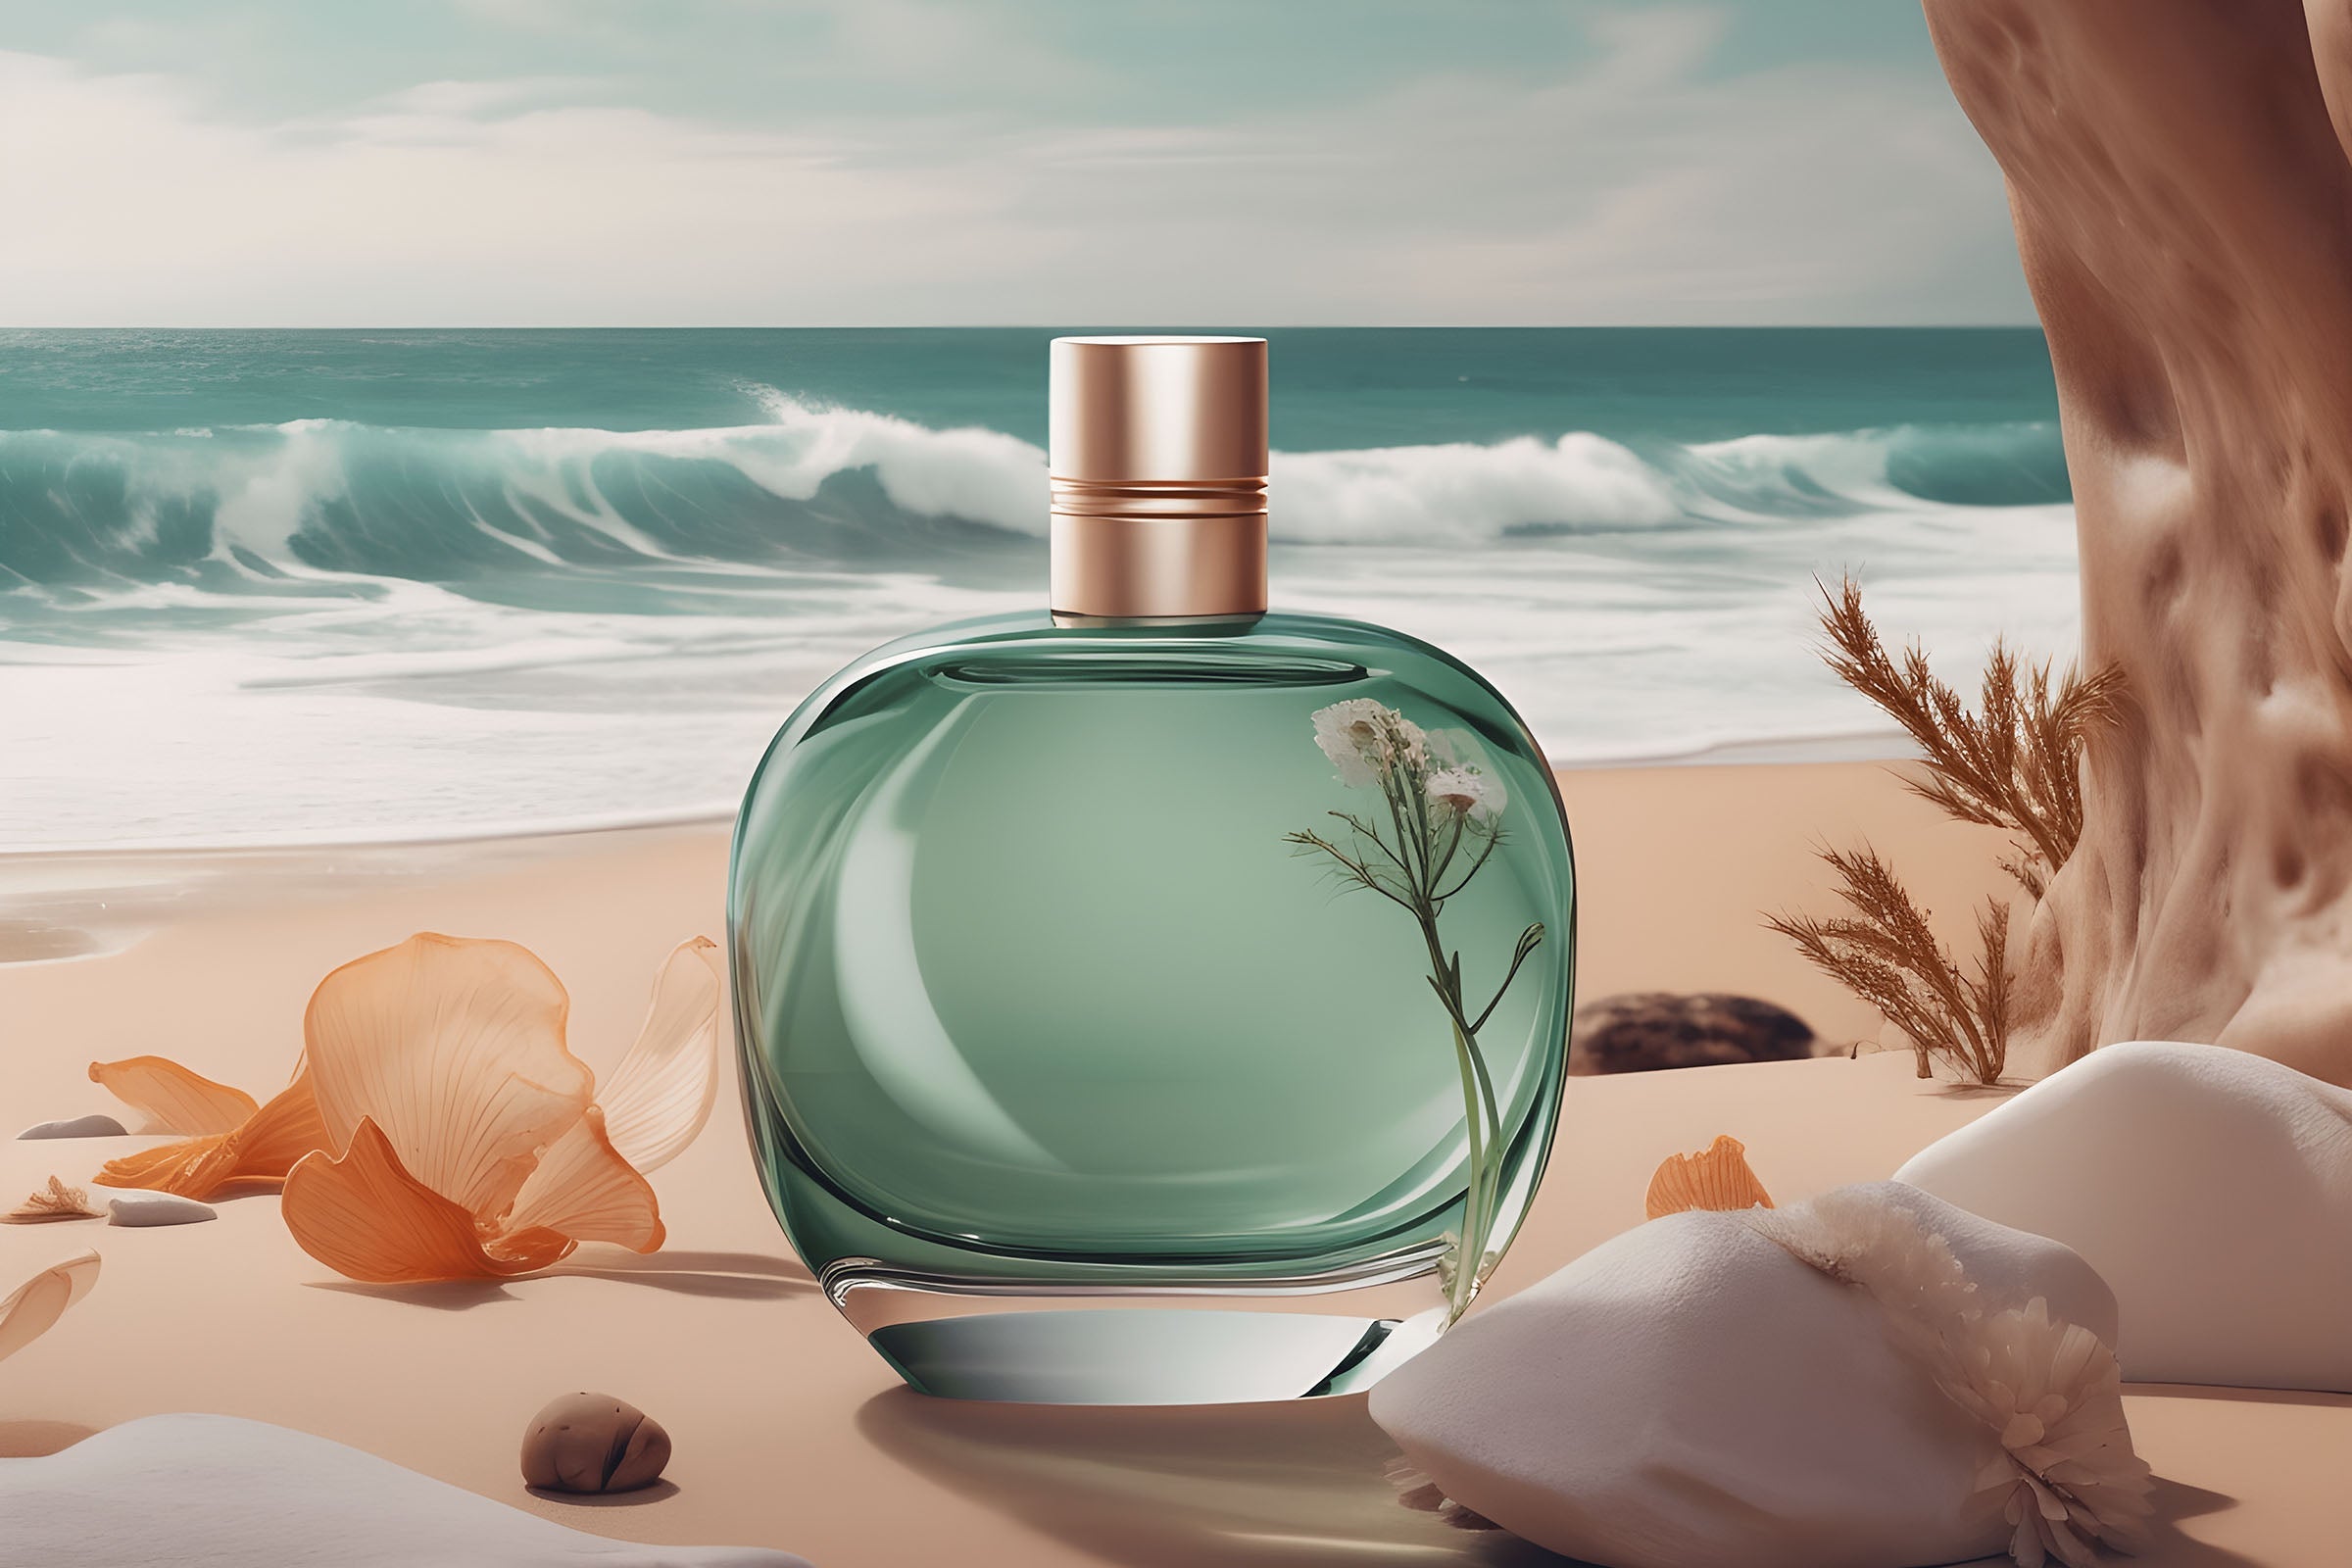 Sea Breeze Fragrance Oil